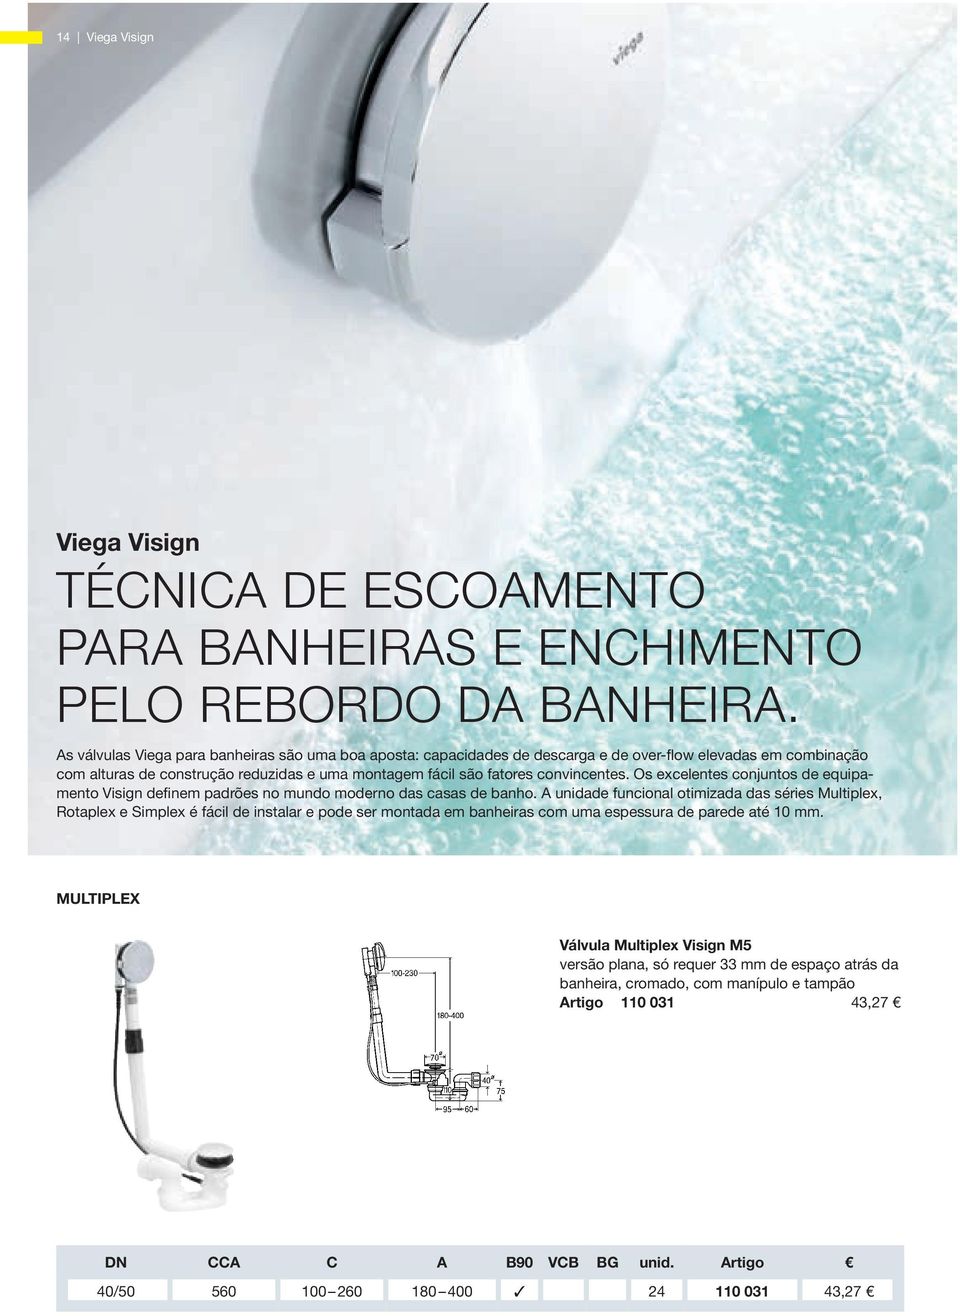 Os excelentes conjuntos de equipamento Visign definem padrões no mundo moderno das casas de banho.